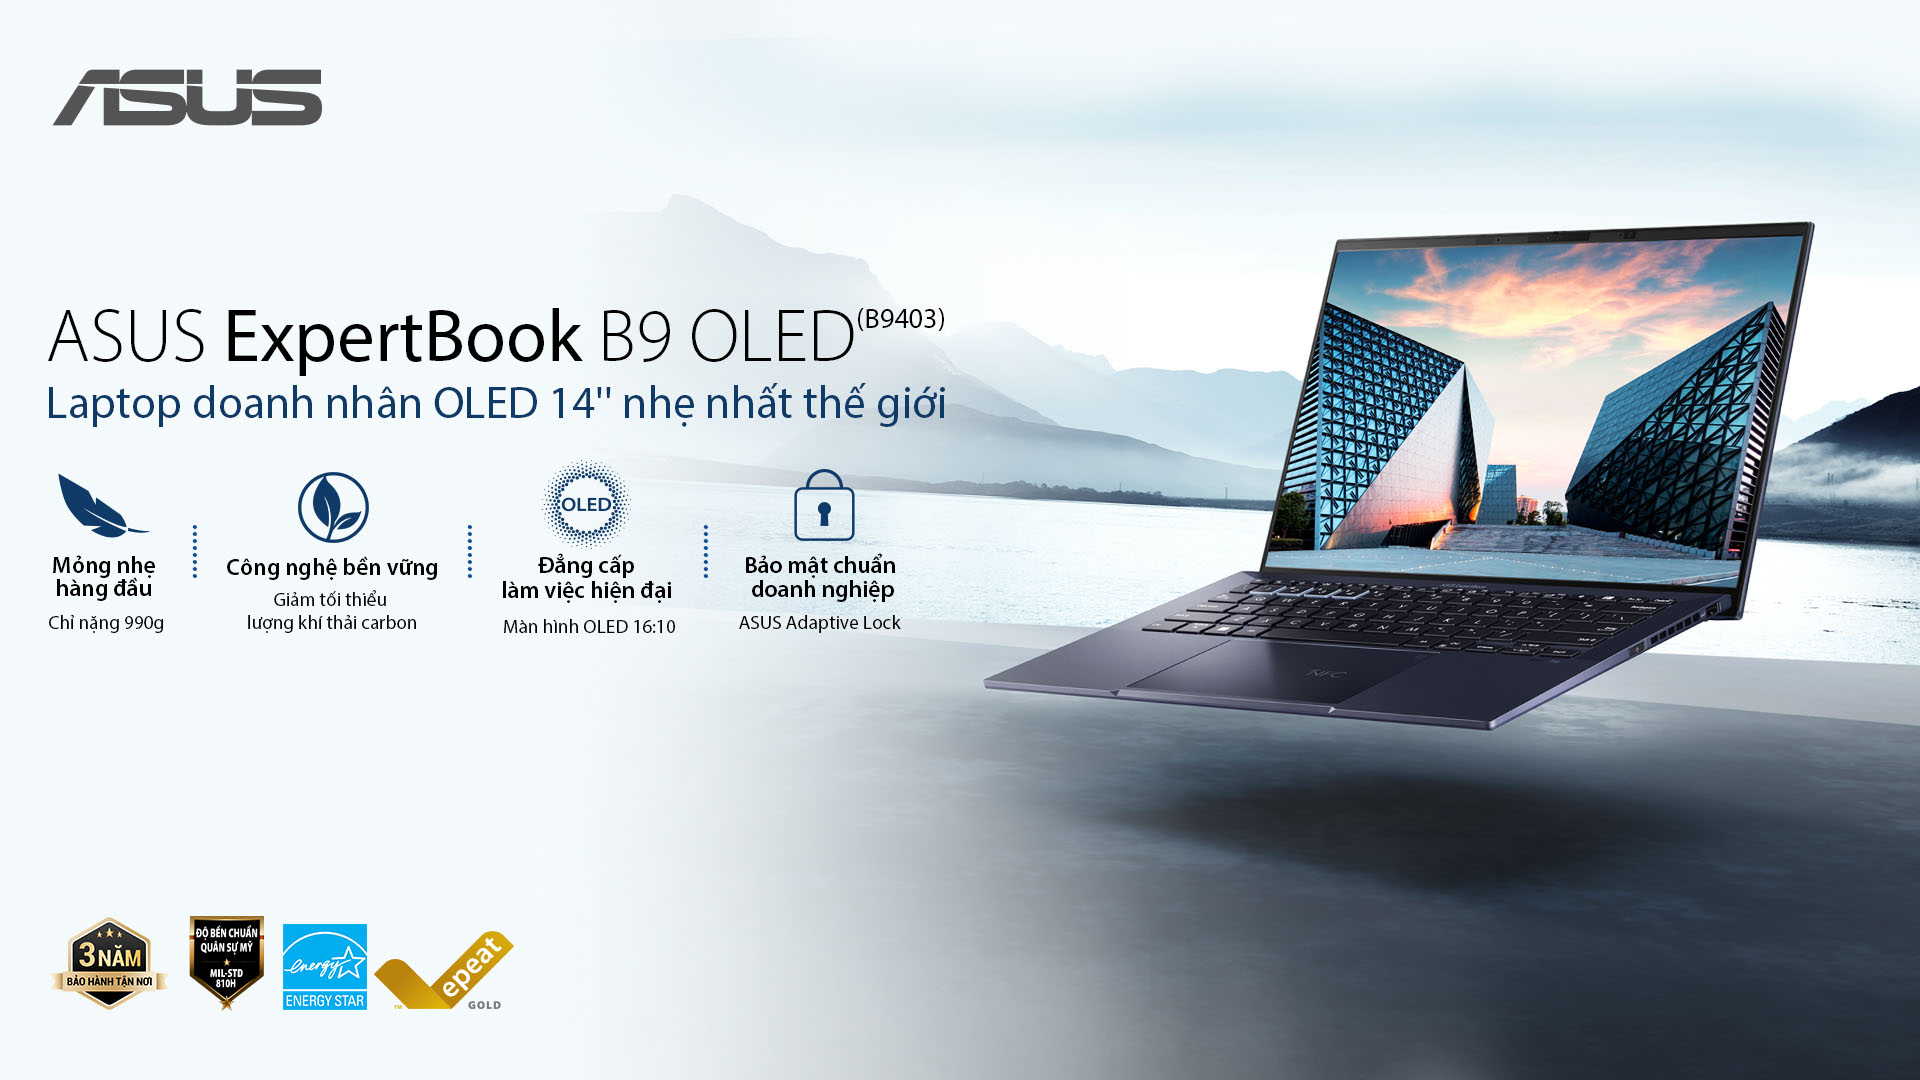 ASUS giới thiệu laptop OLED 14 inch siêu nhẹ cùng loạt máy tính Expert Series - khi doanh nhân hướng tới cuộc sống xanh - Ảnh 3.